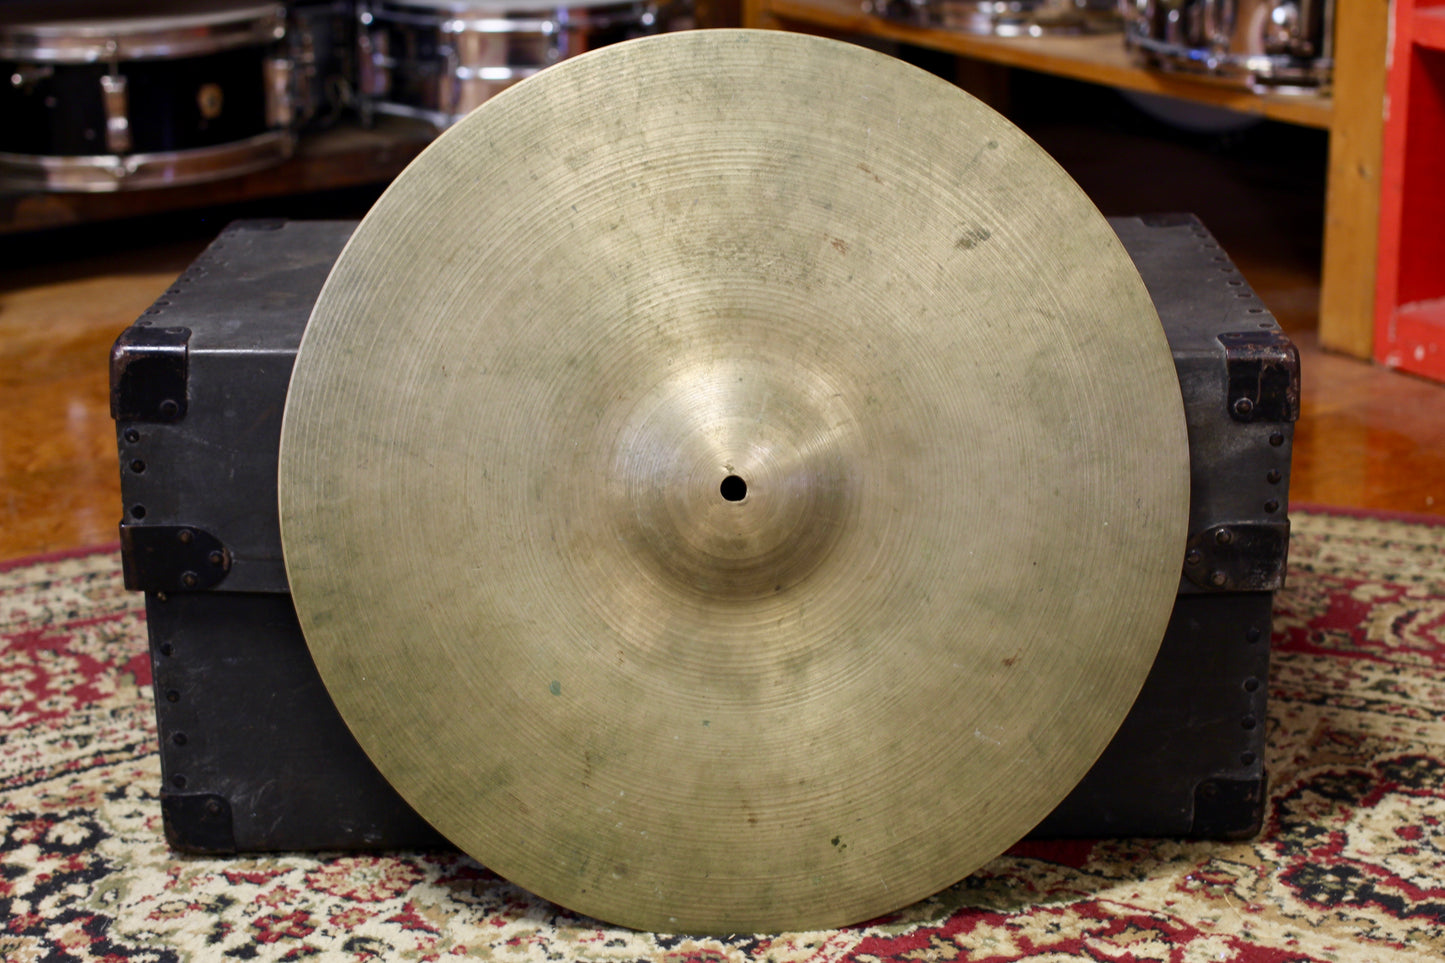 1960s A Zildjian 18" Crash Cymbal 1510g